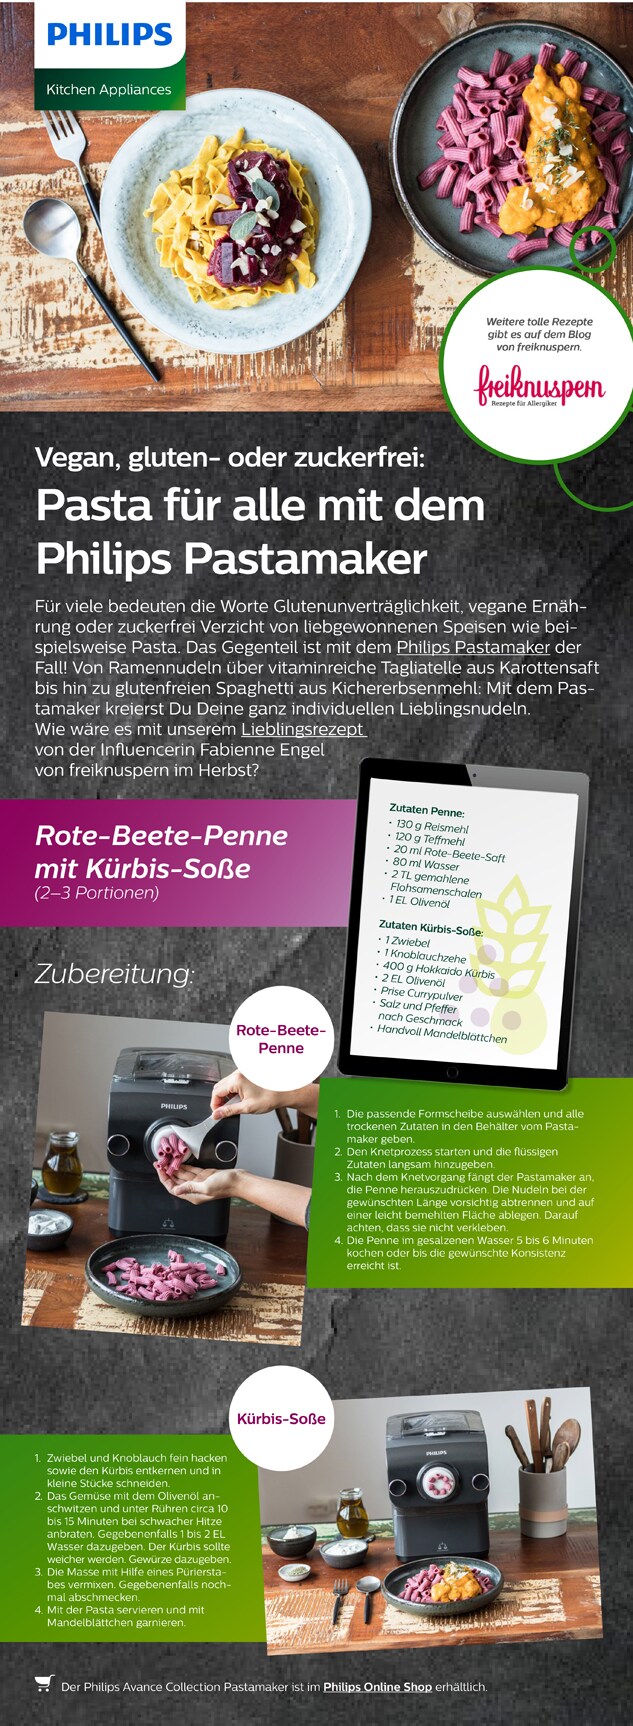 Philips Themensheet Pastamaker